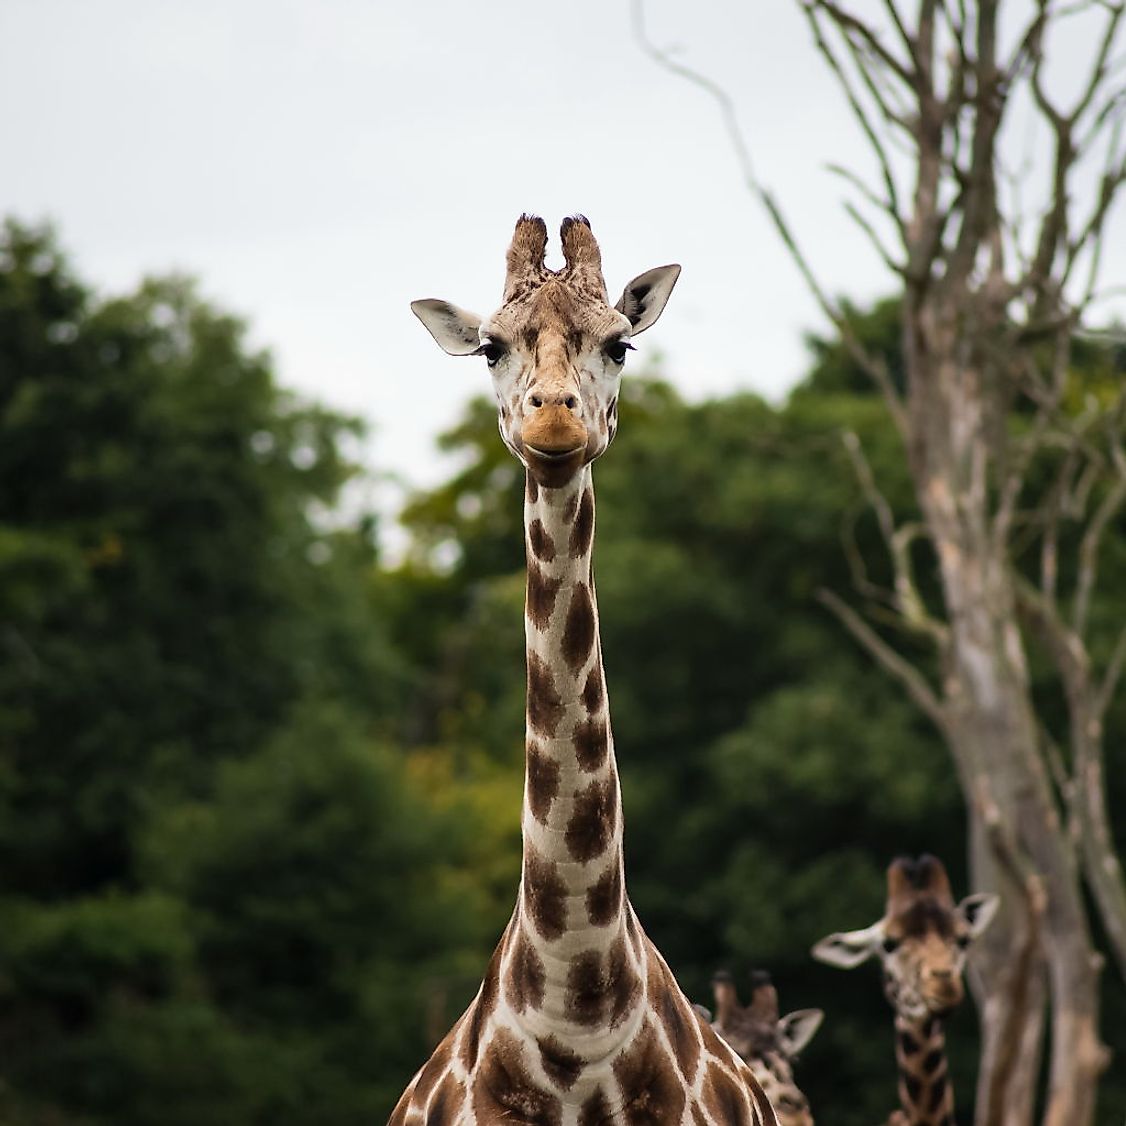 Giraffe Facts - Animals of Africa - WorldAtlas